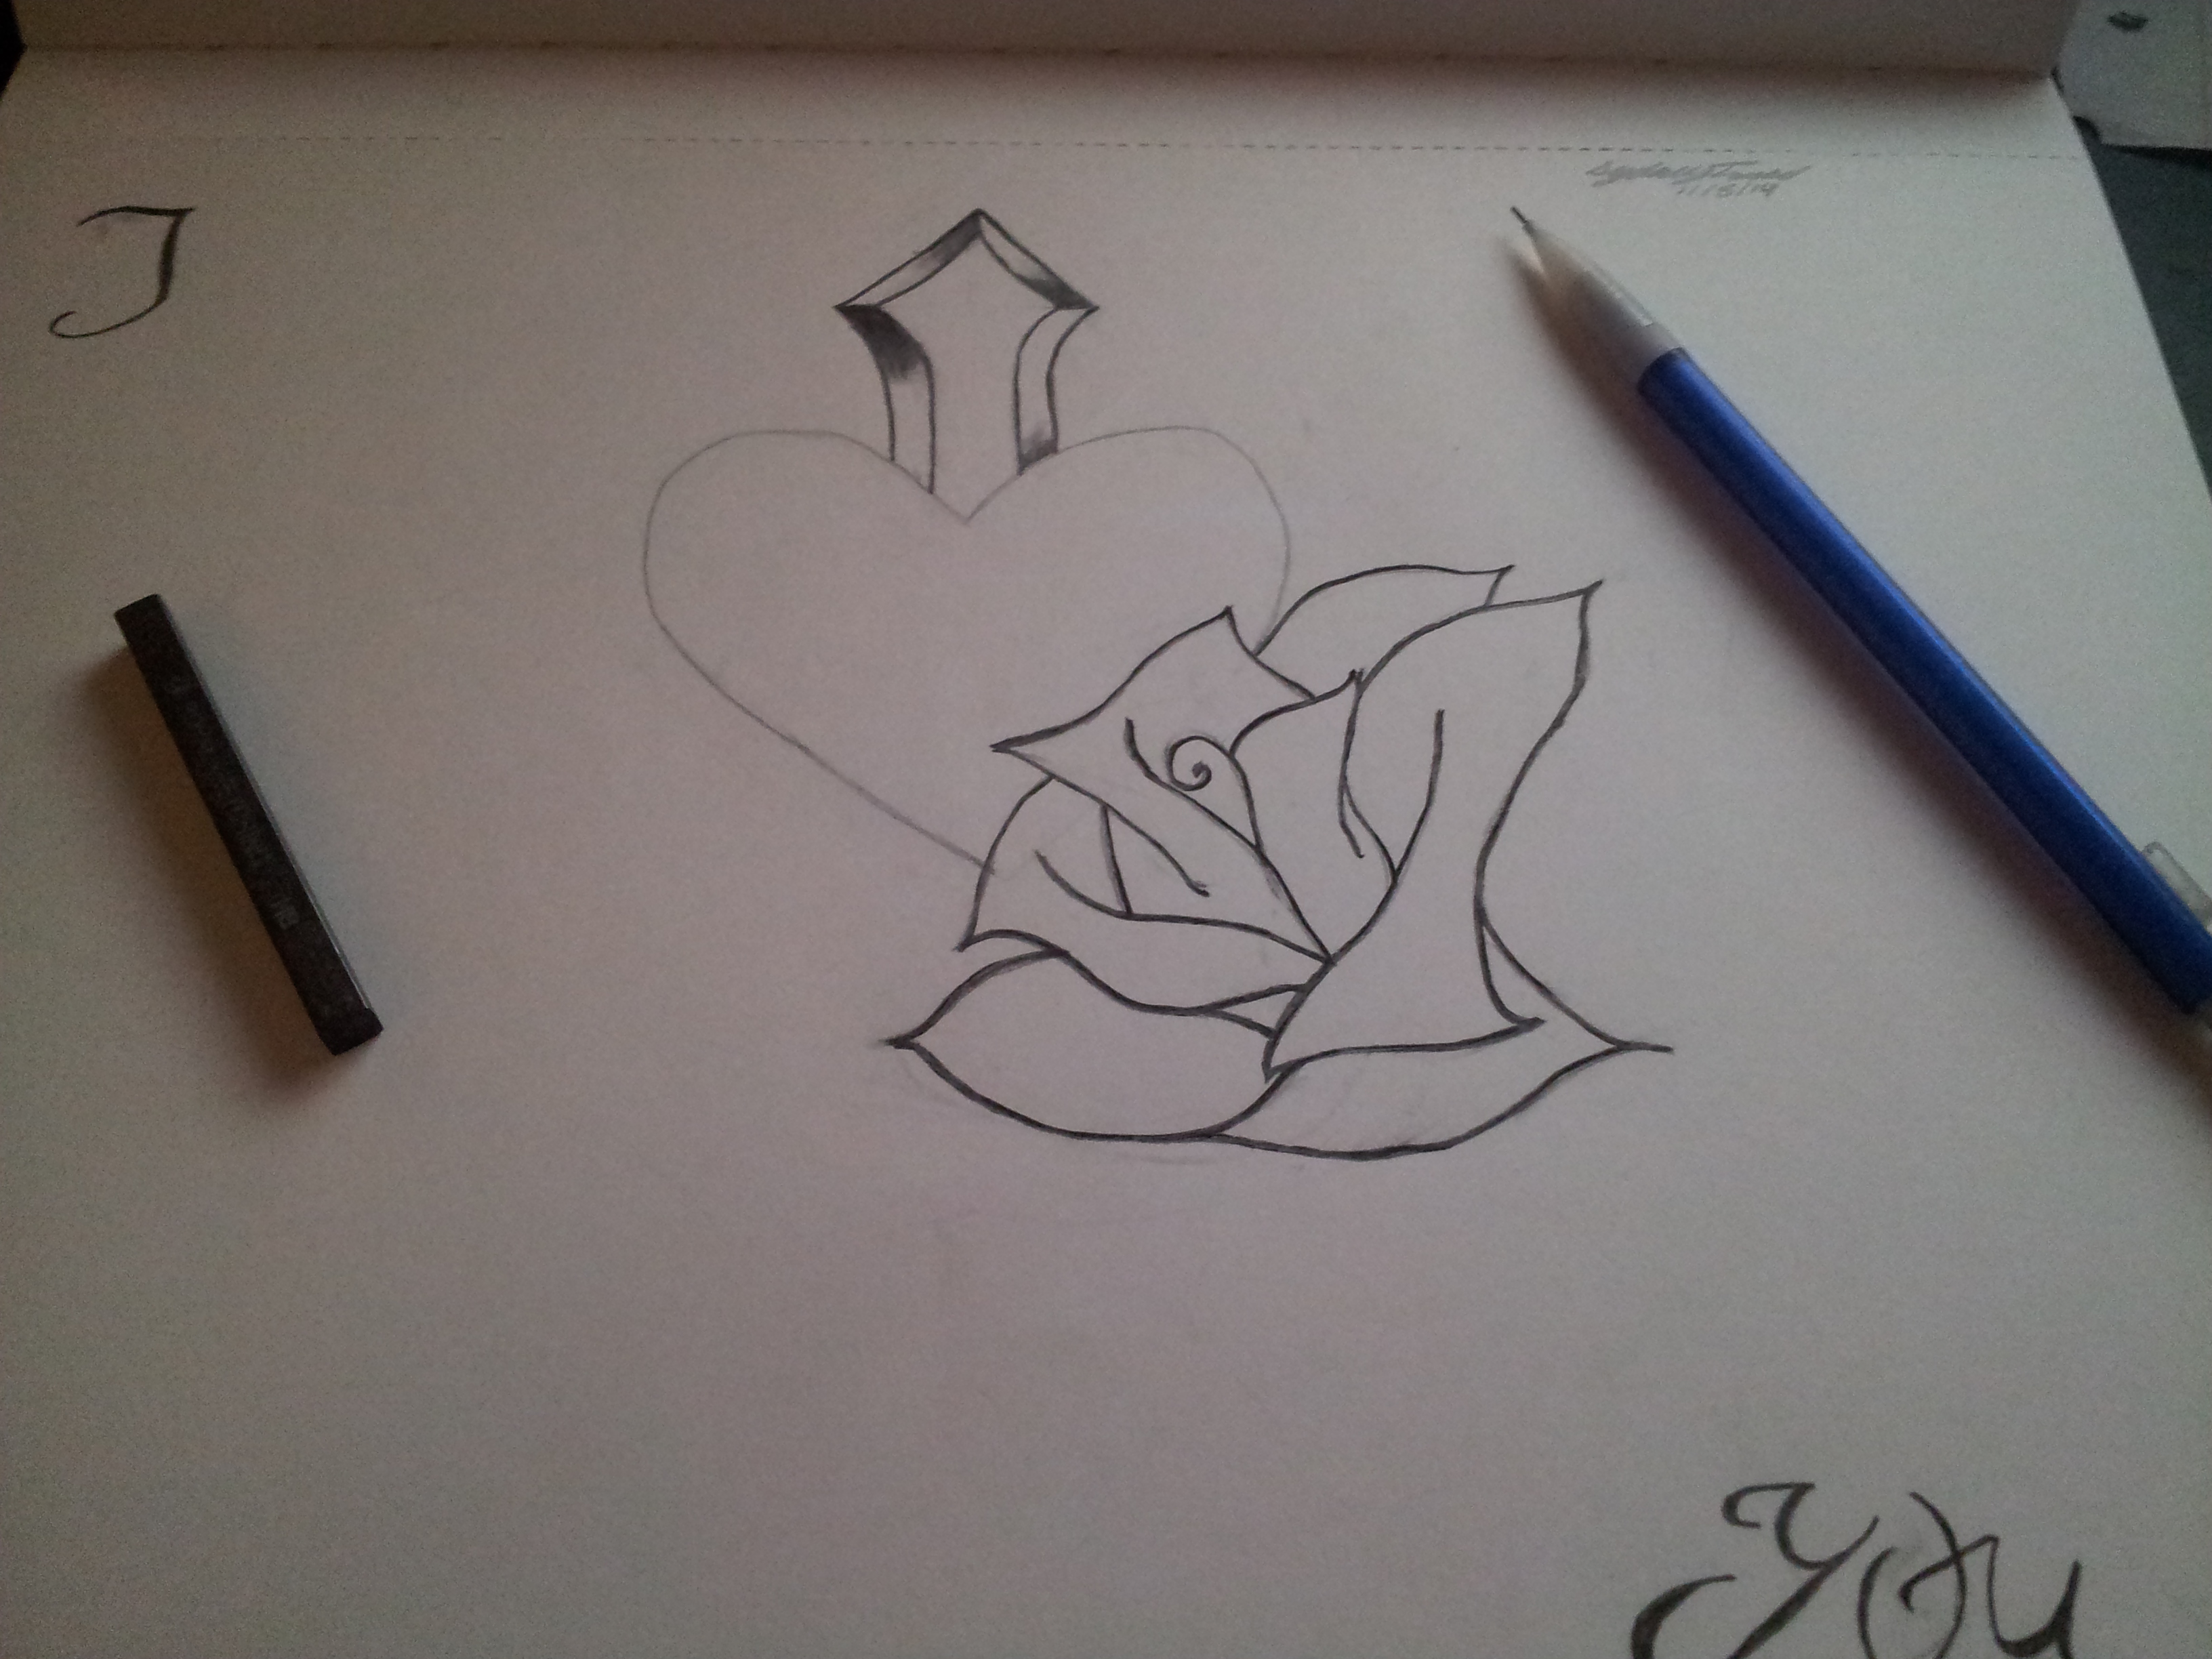 Heart Drawing - Work in Progress - by Luv4_Eternity